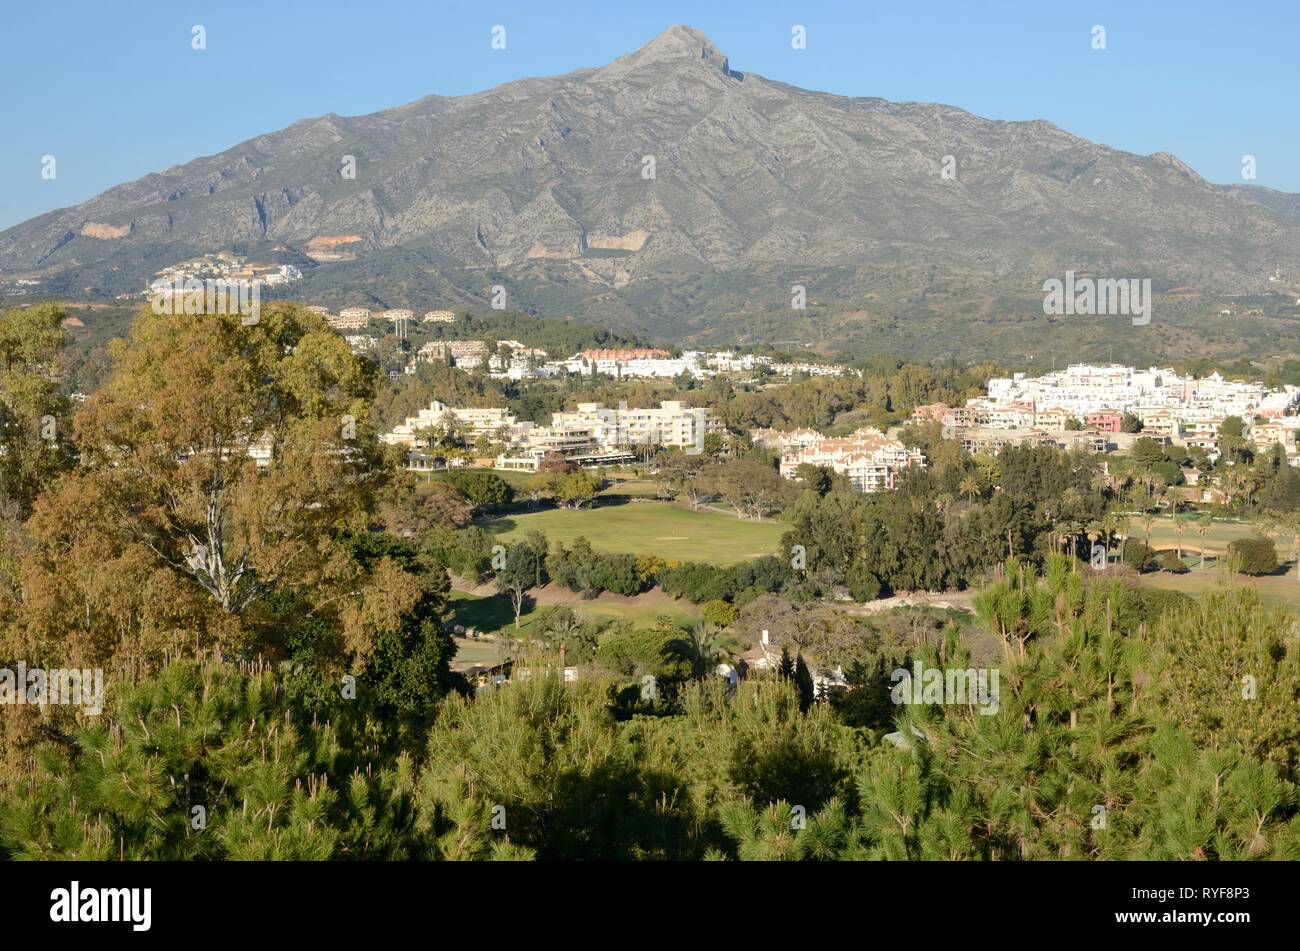 Vista de los campos de golf y casas al pie de la montaña en Marbella, Andalucía, España. Foto de stock